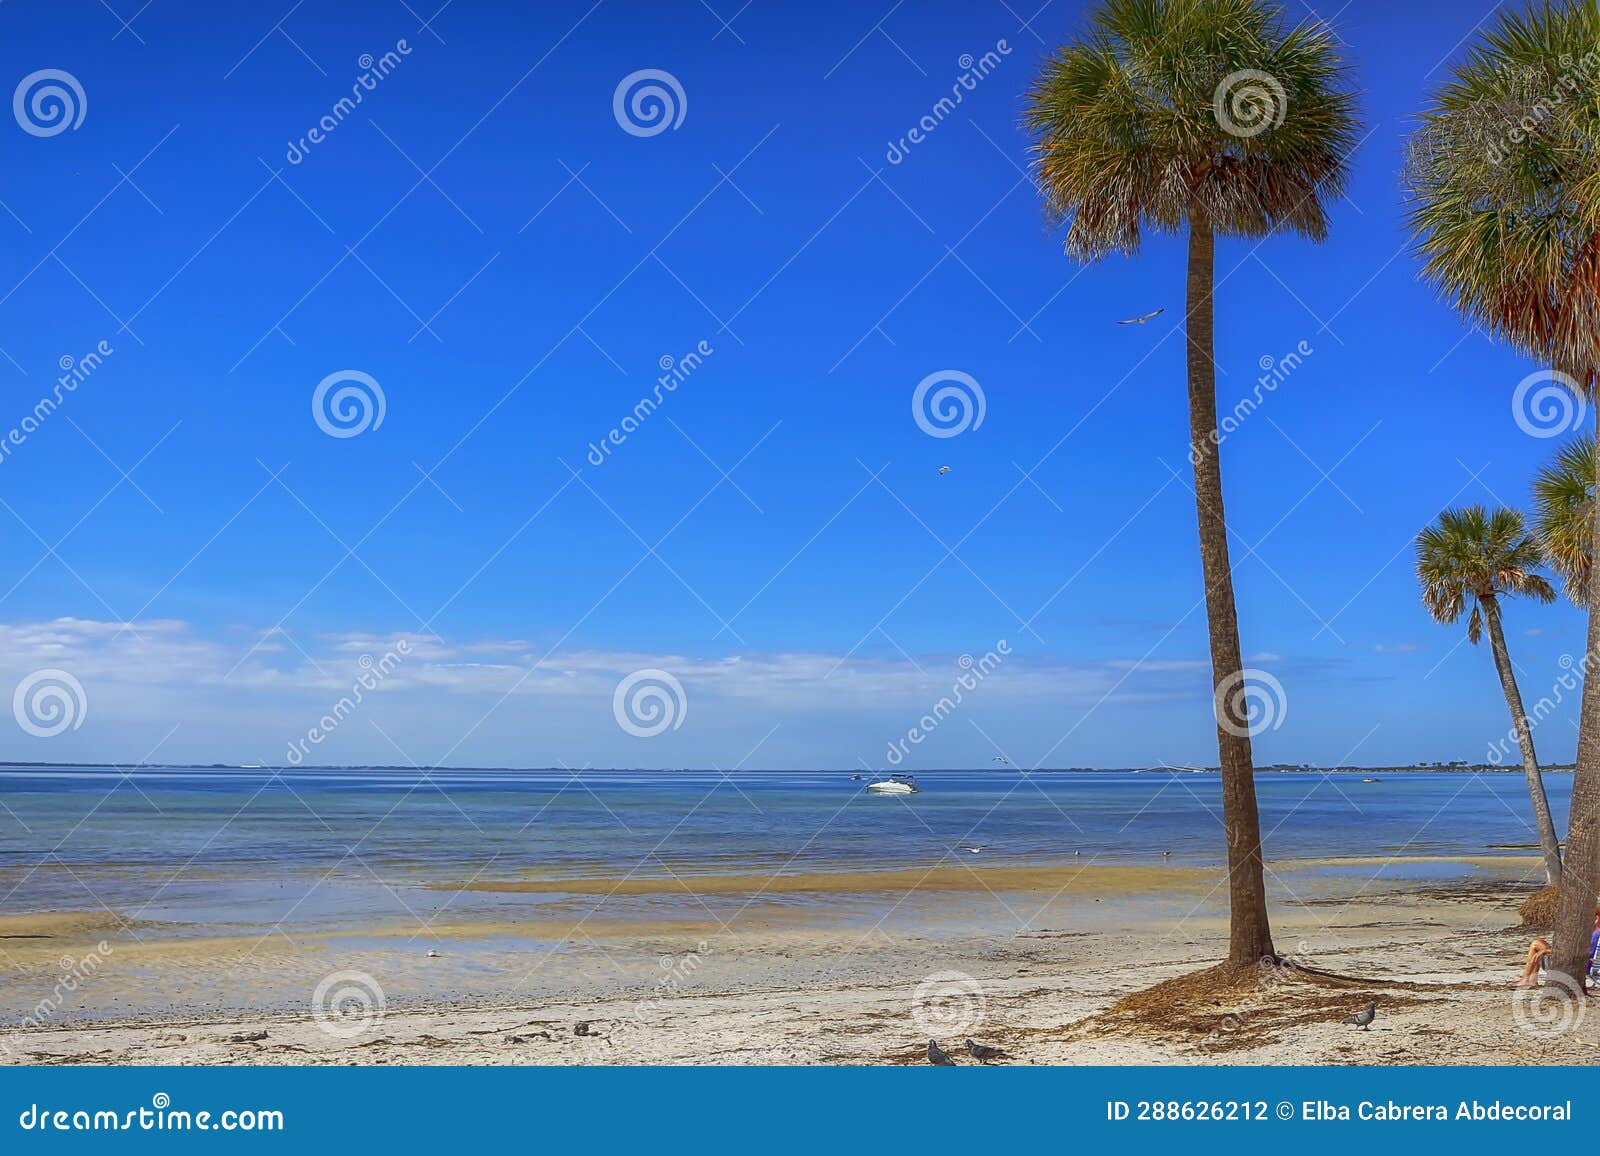 ben t. david beach, tampa, florida